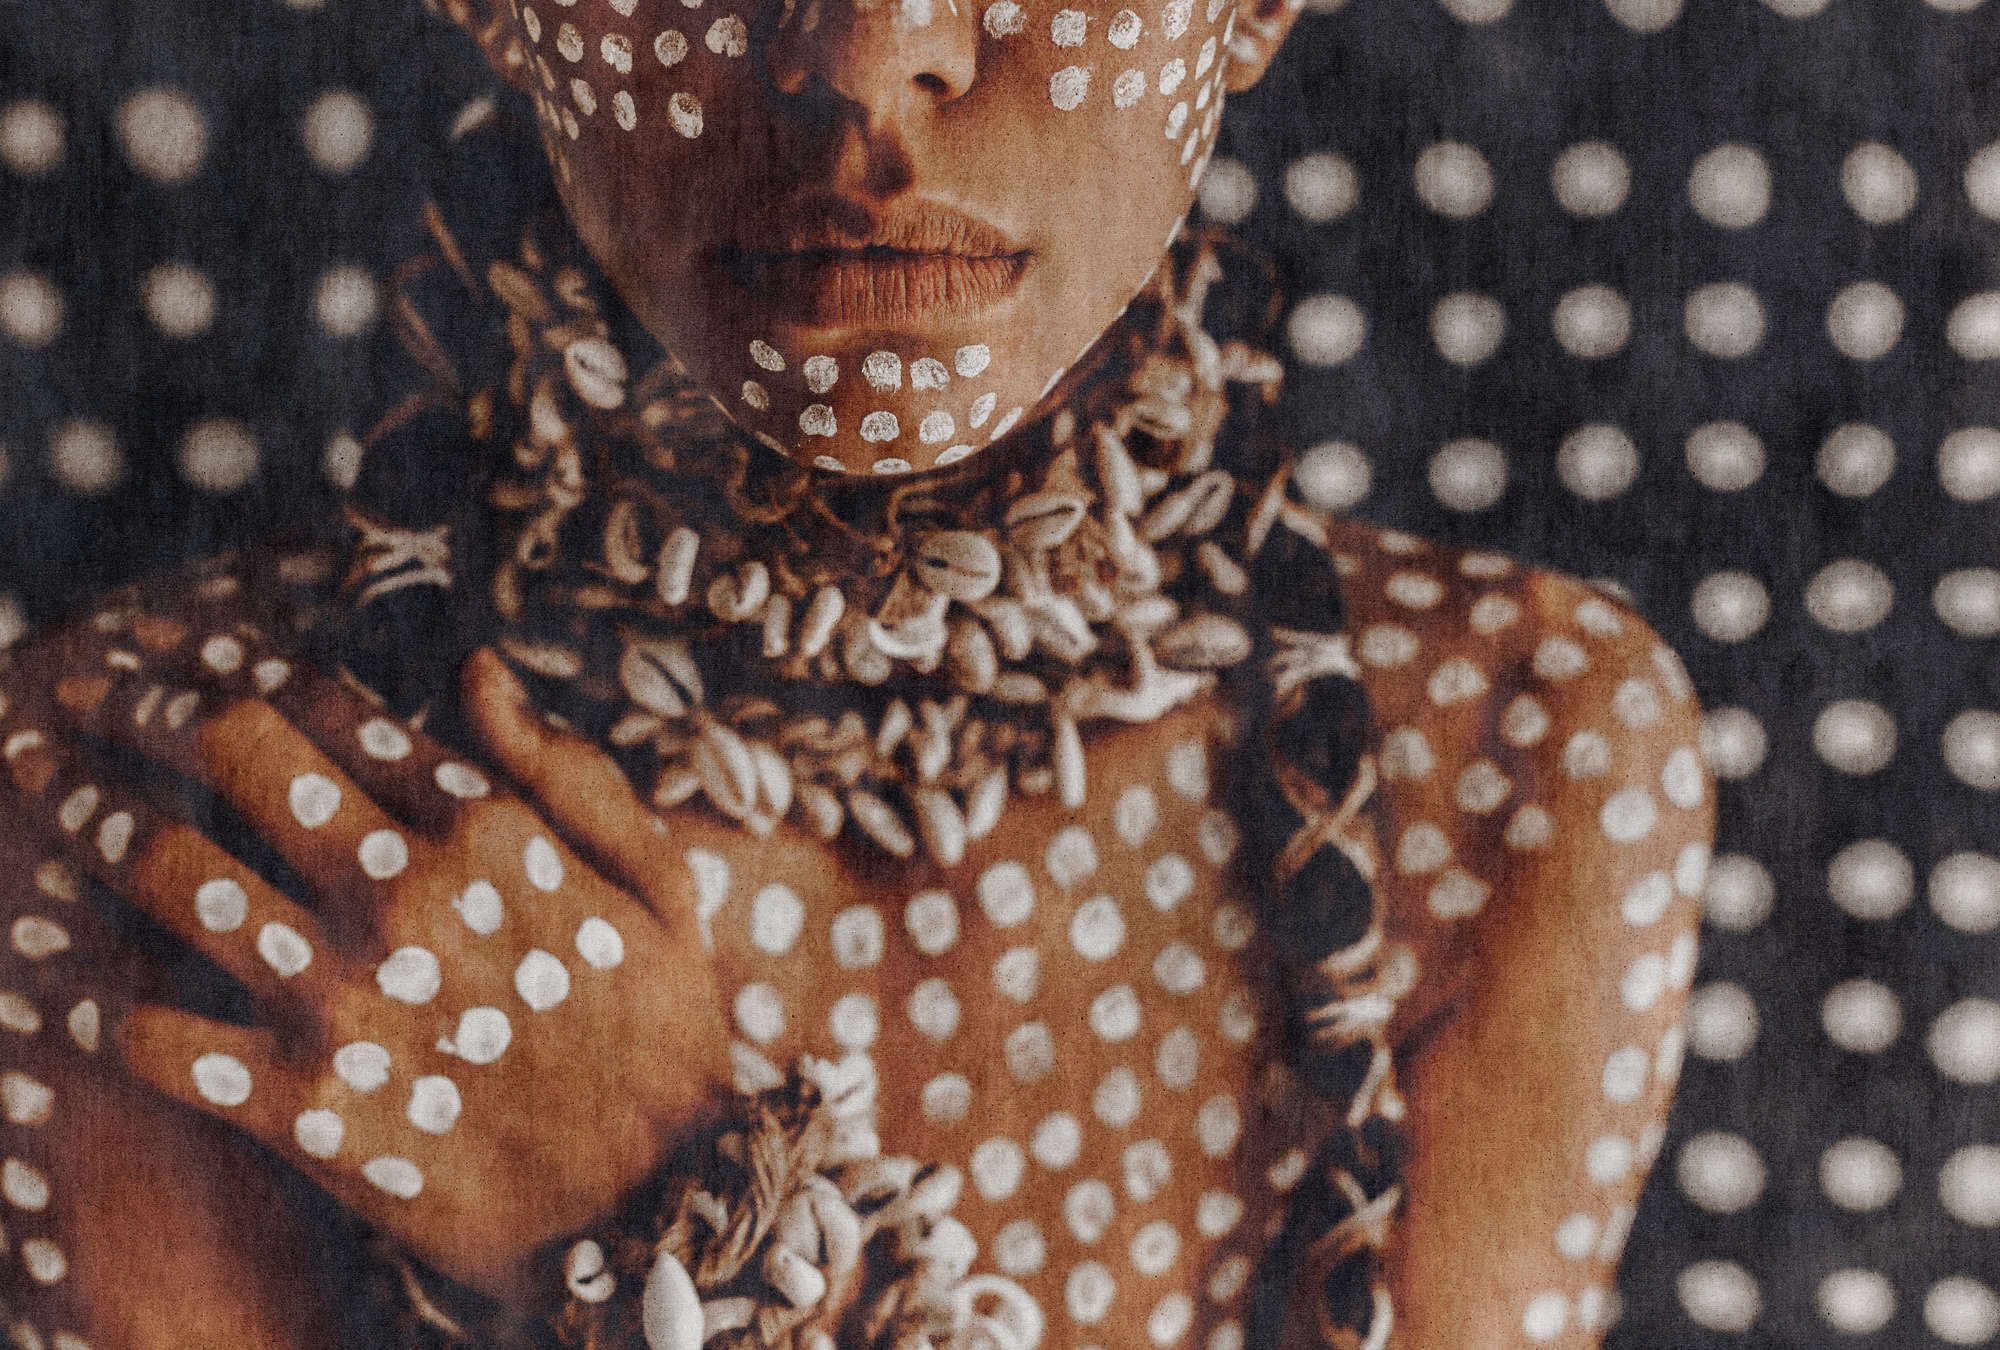             Fototapete »alani« - Afrikanische Frau mit Körperbemalung, Gobelinstruktur im Hintergrund – Glattes, leicht glänzendes Premiumvlies
        